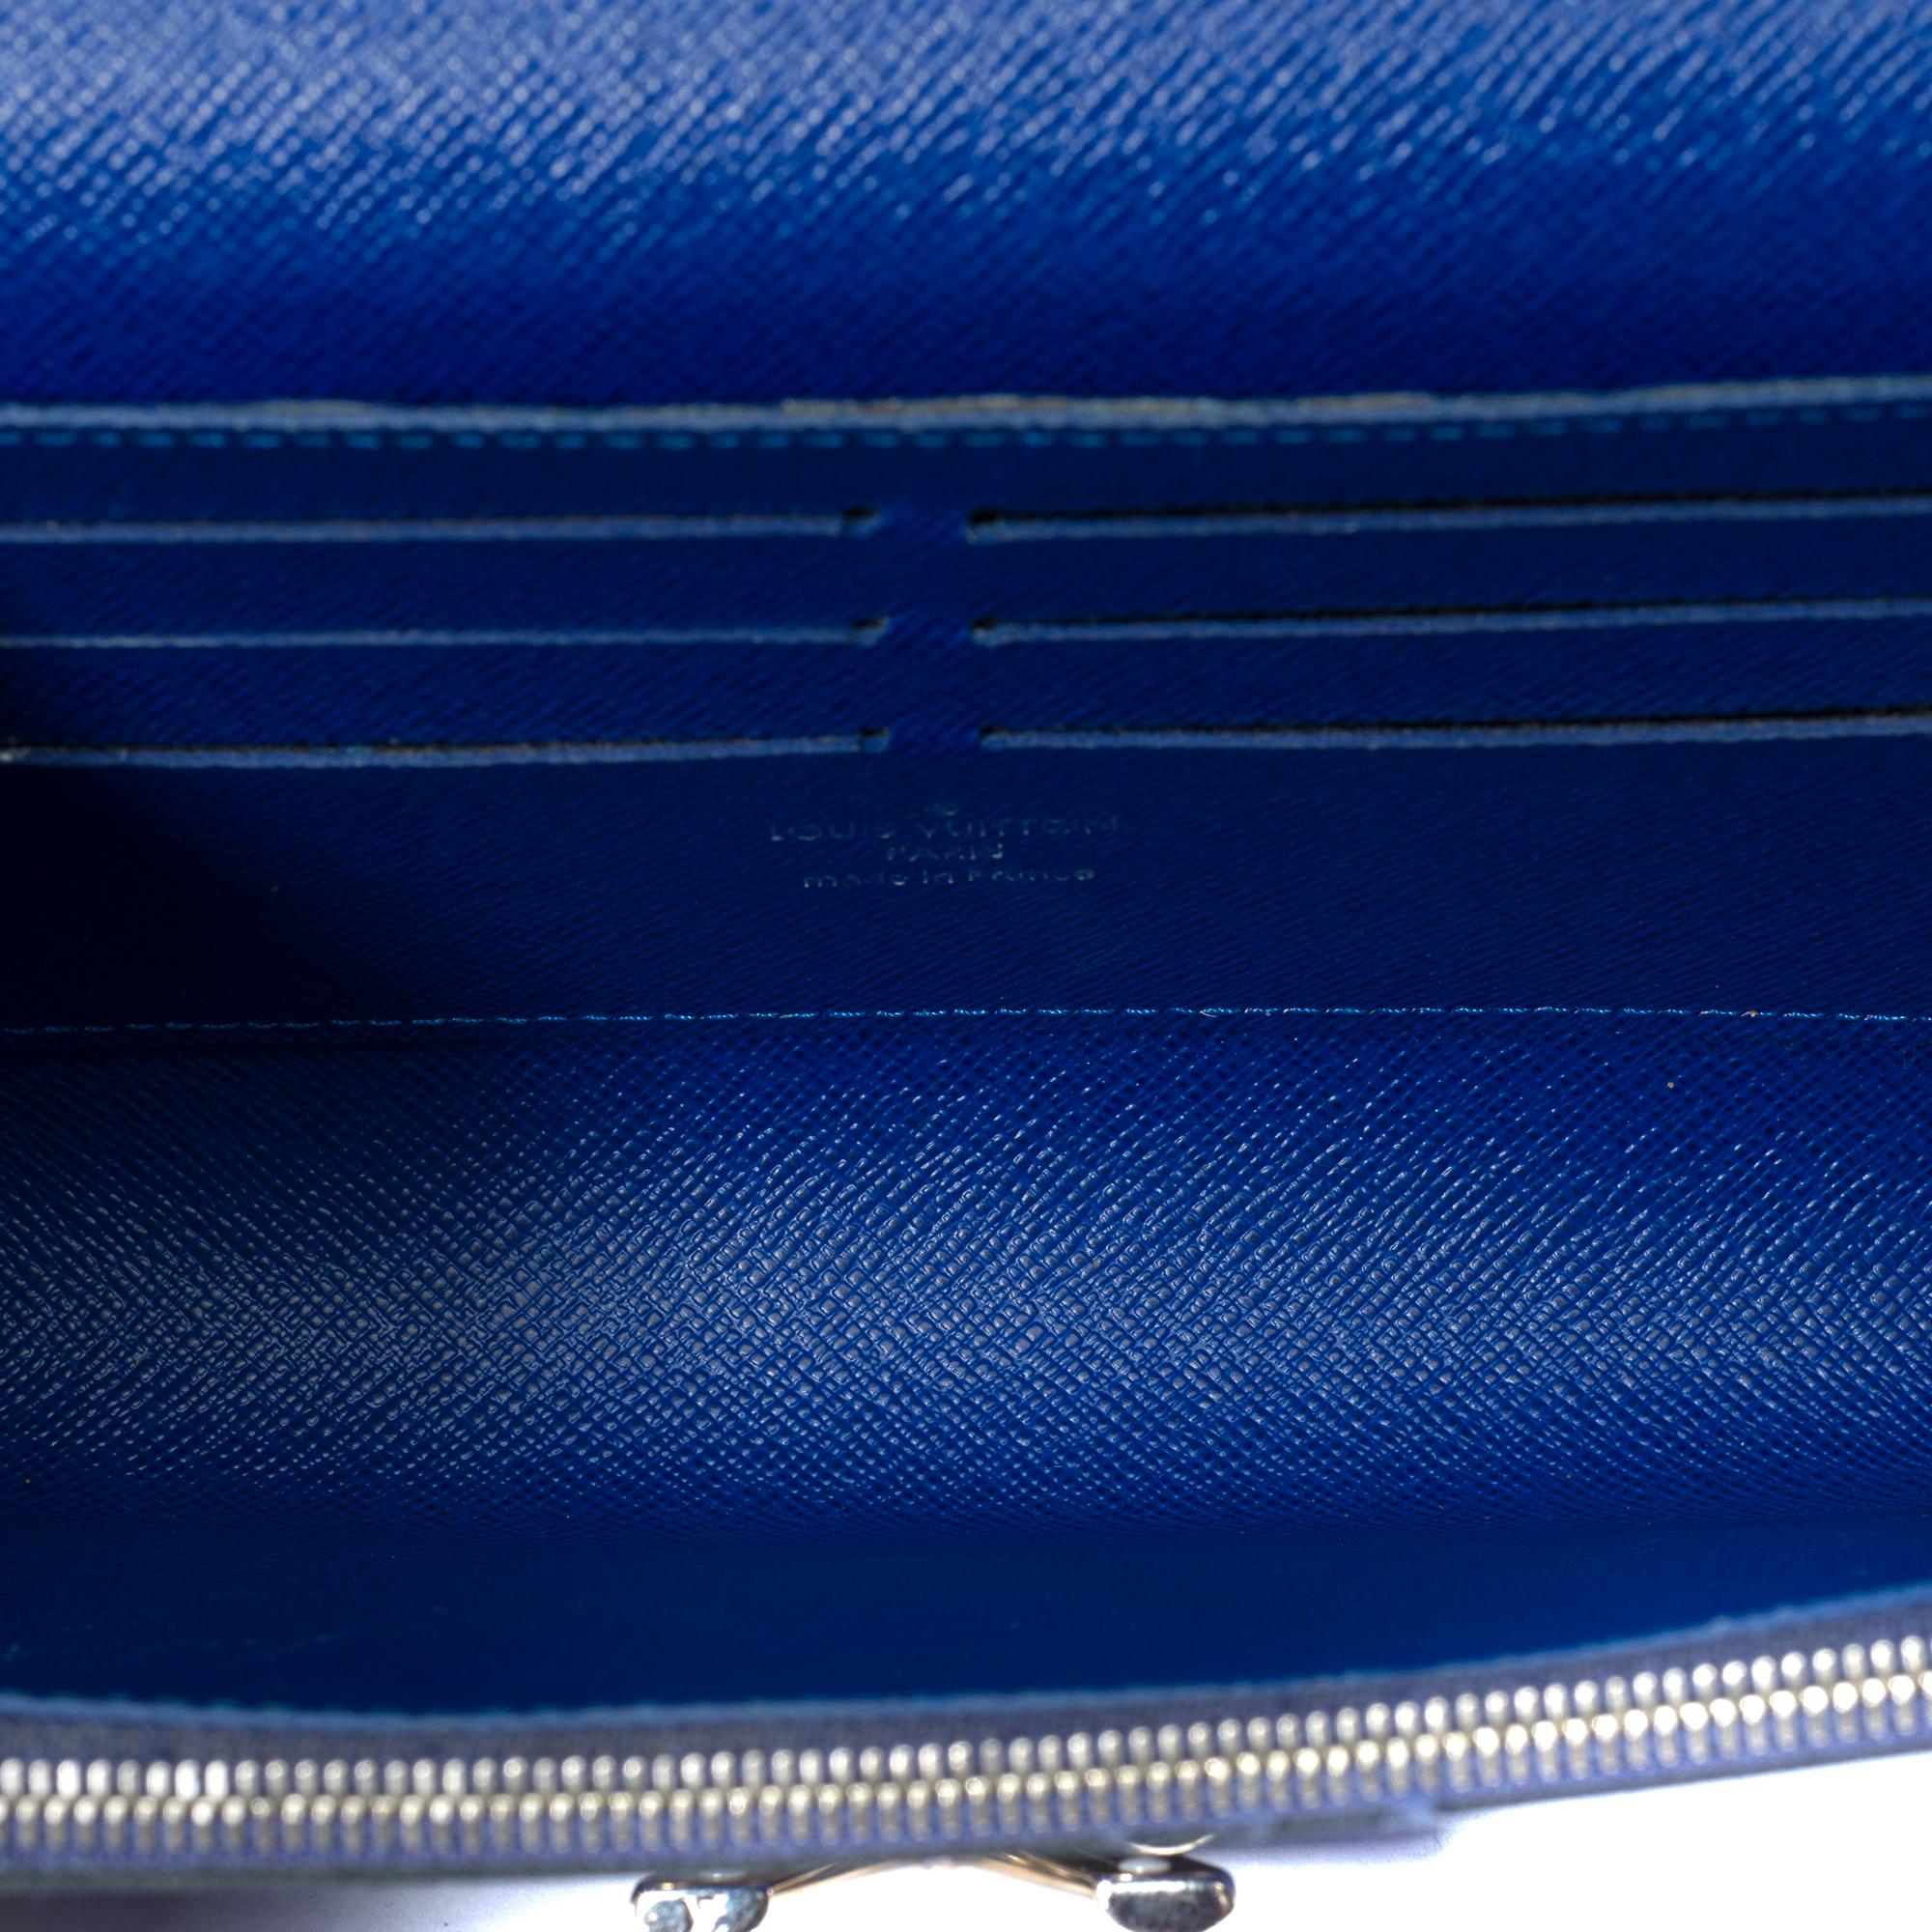 Flamingo Louis Vuitton Twist shoulder bag in blue epi leather, SHW 4